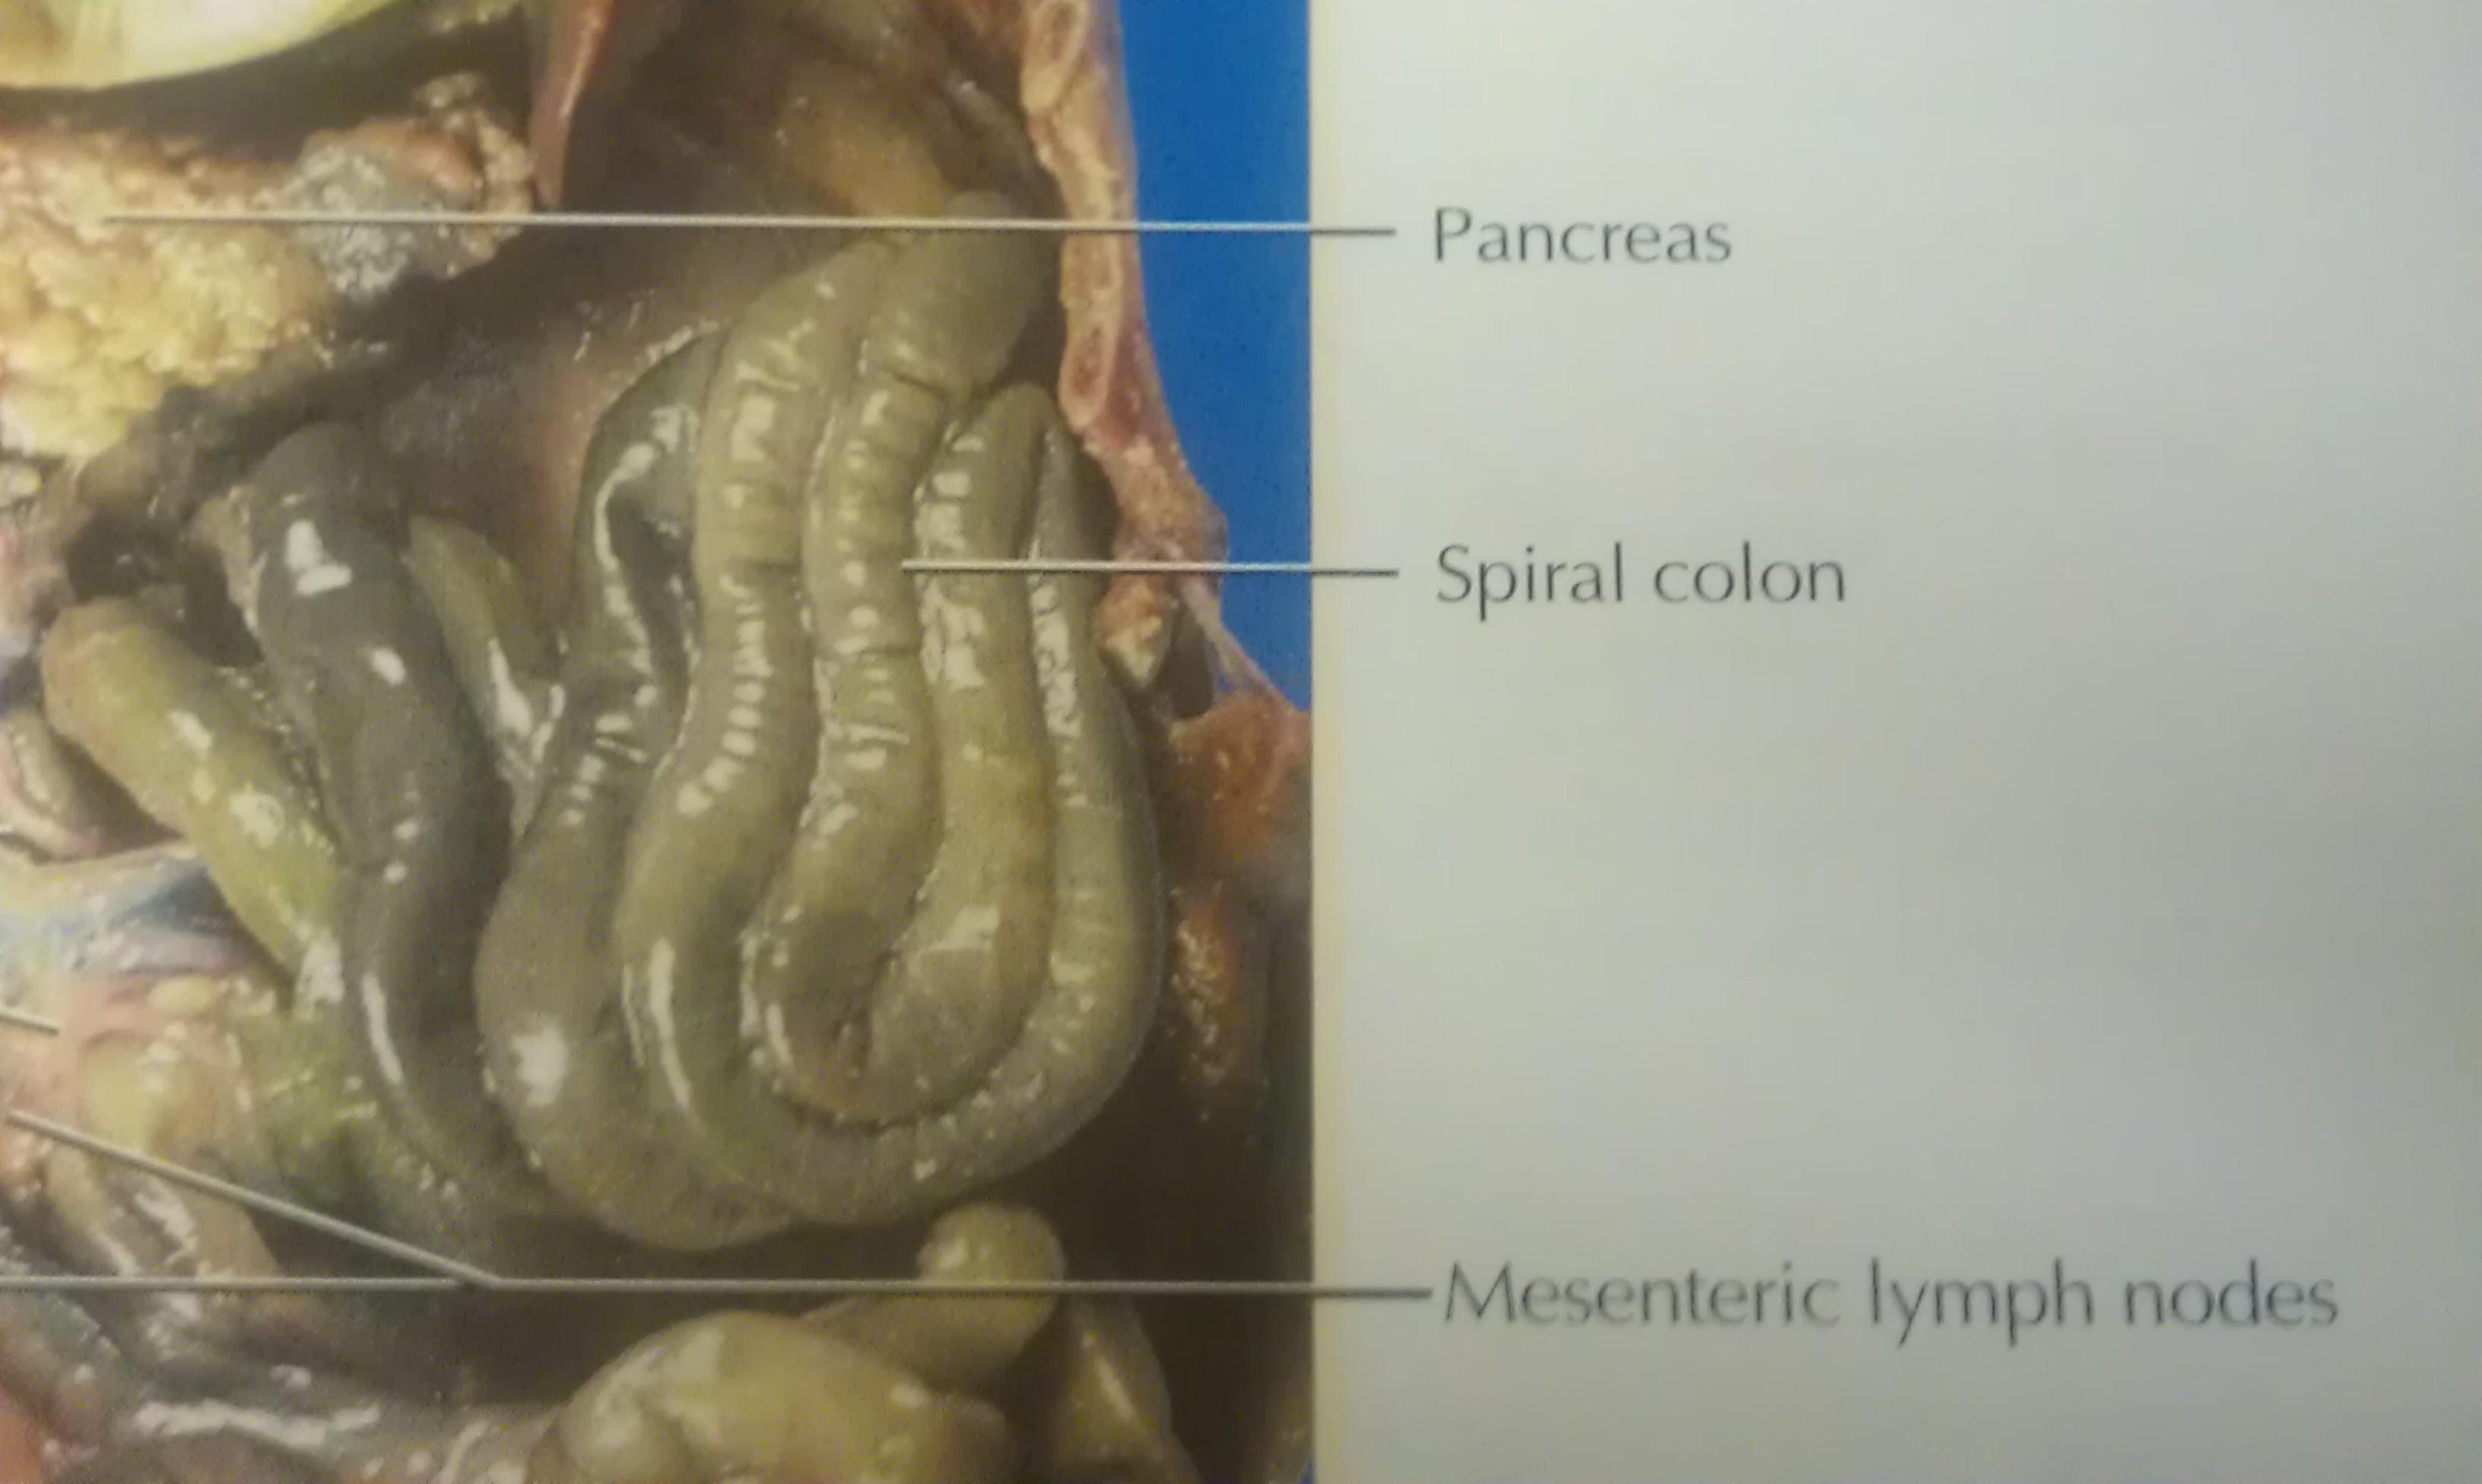 fetal pig small intestine